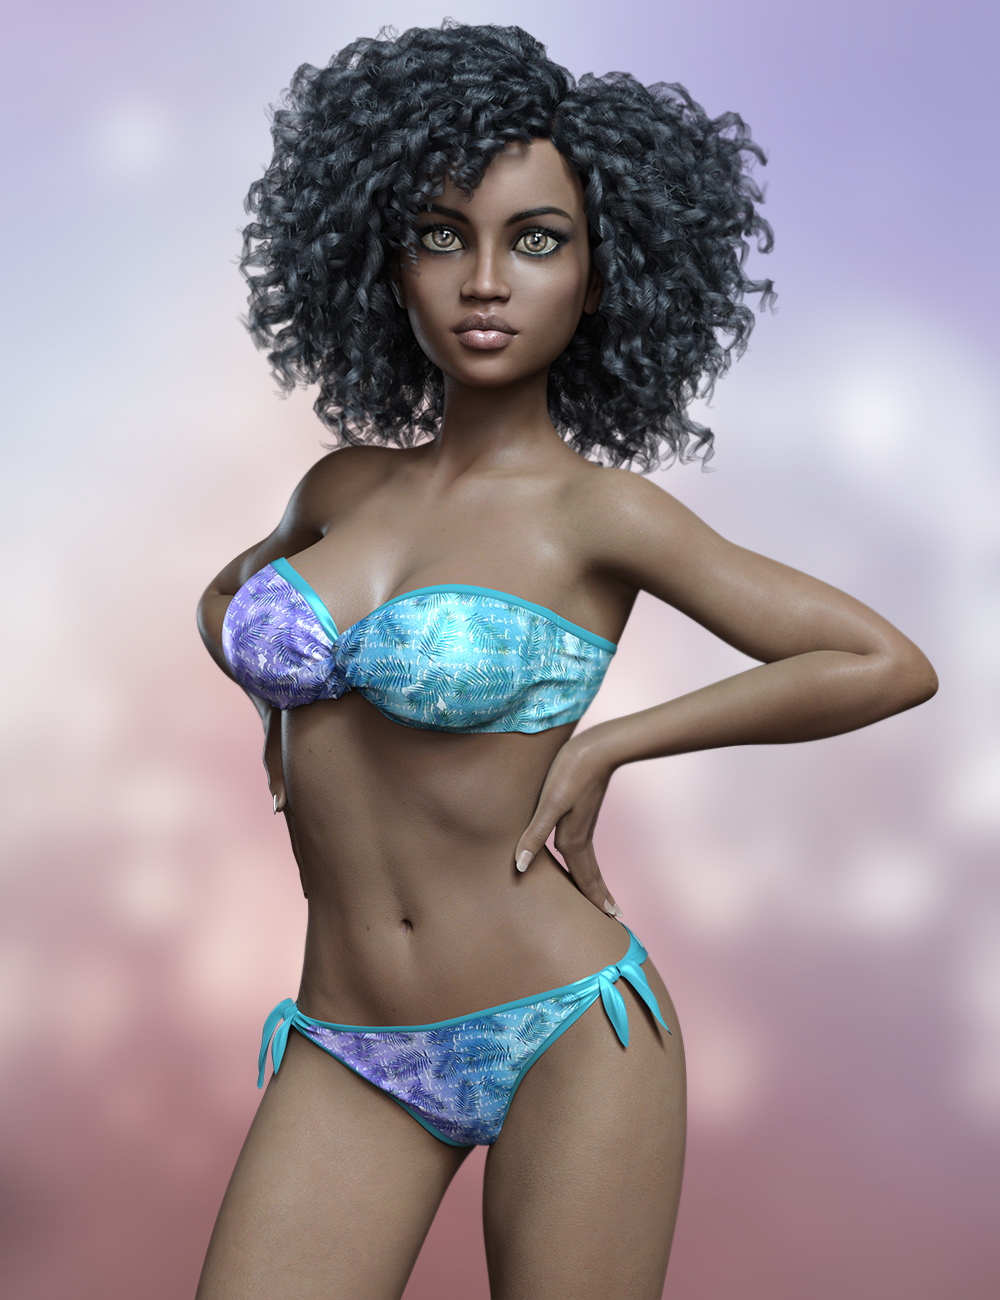 FWSA Destini for The Girl 8 by: Fred Winkler ArtSabby, 3D Models by Daz 3D